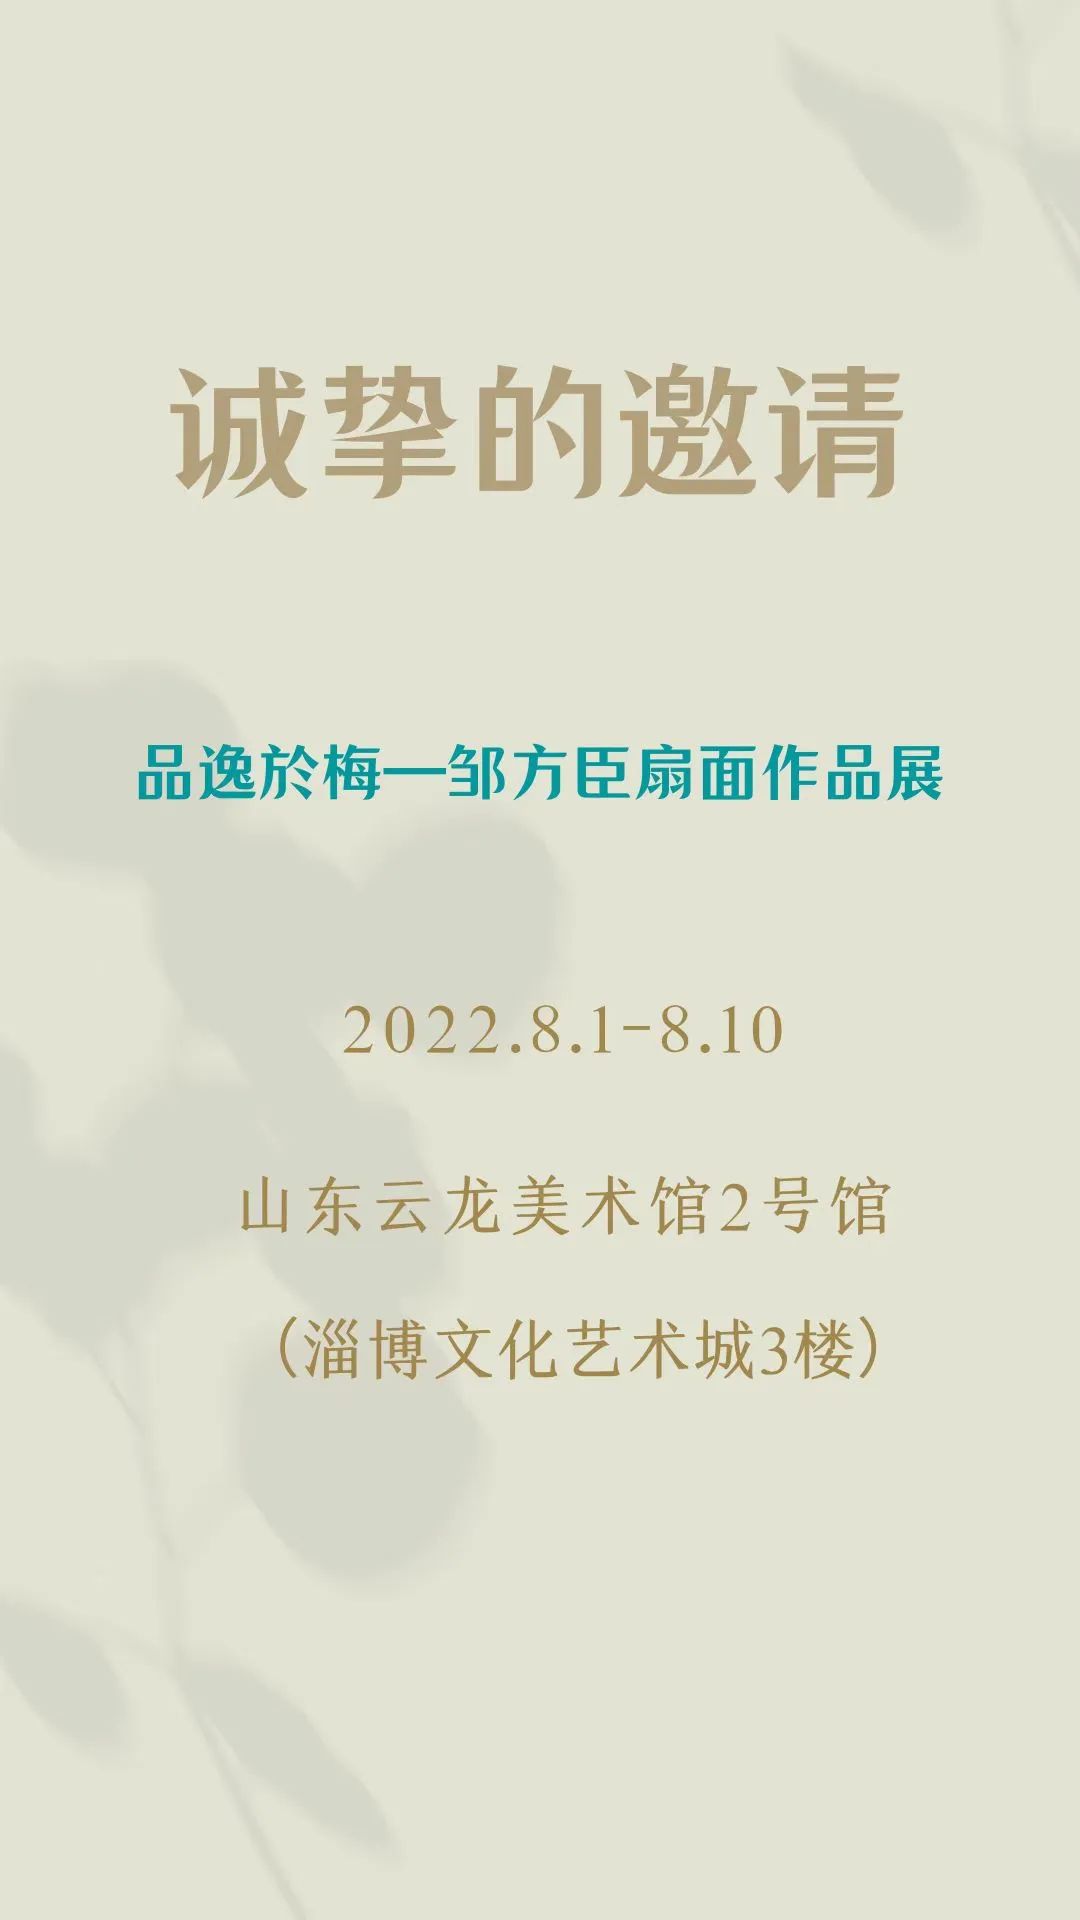 “品逸於梅——邹方臣扇面作品展”将于8月1日在山东云龙美术馆展出